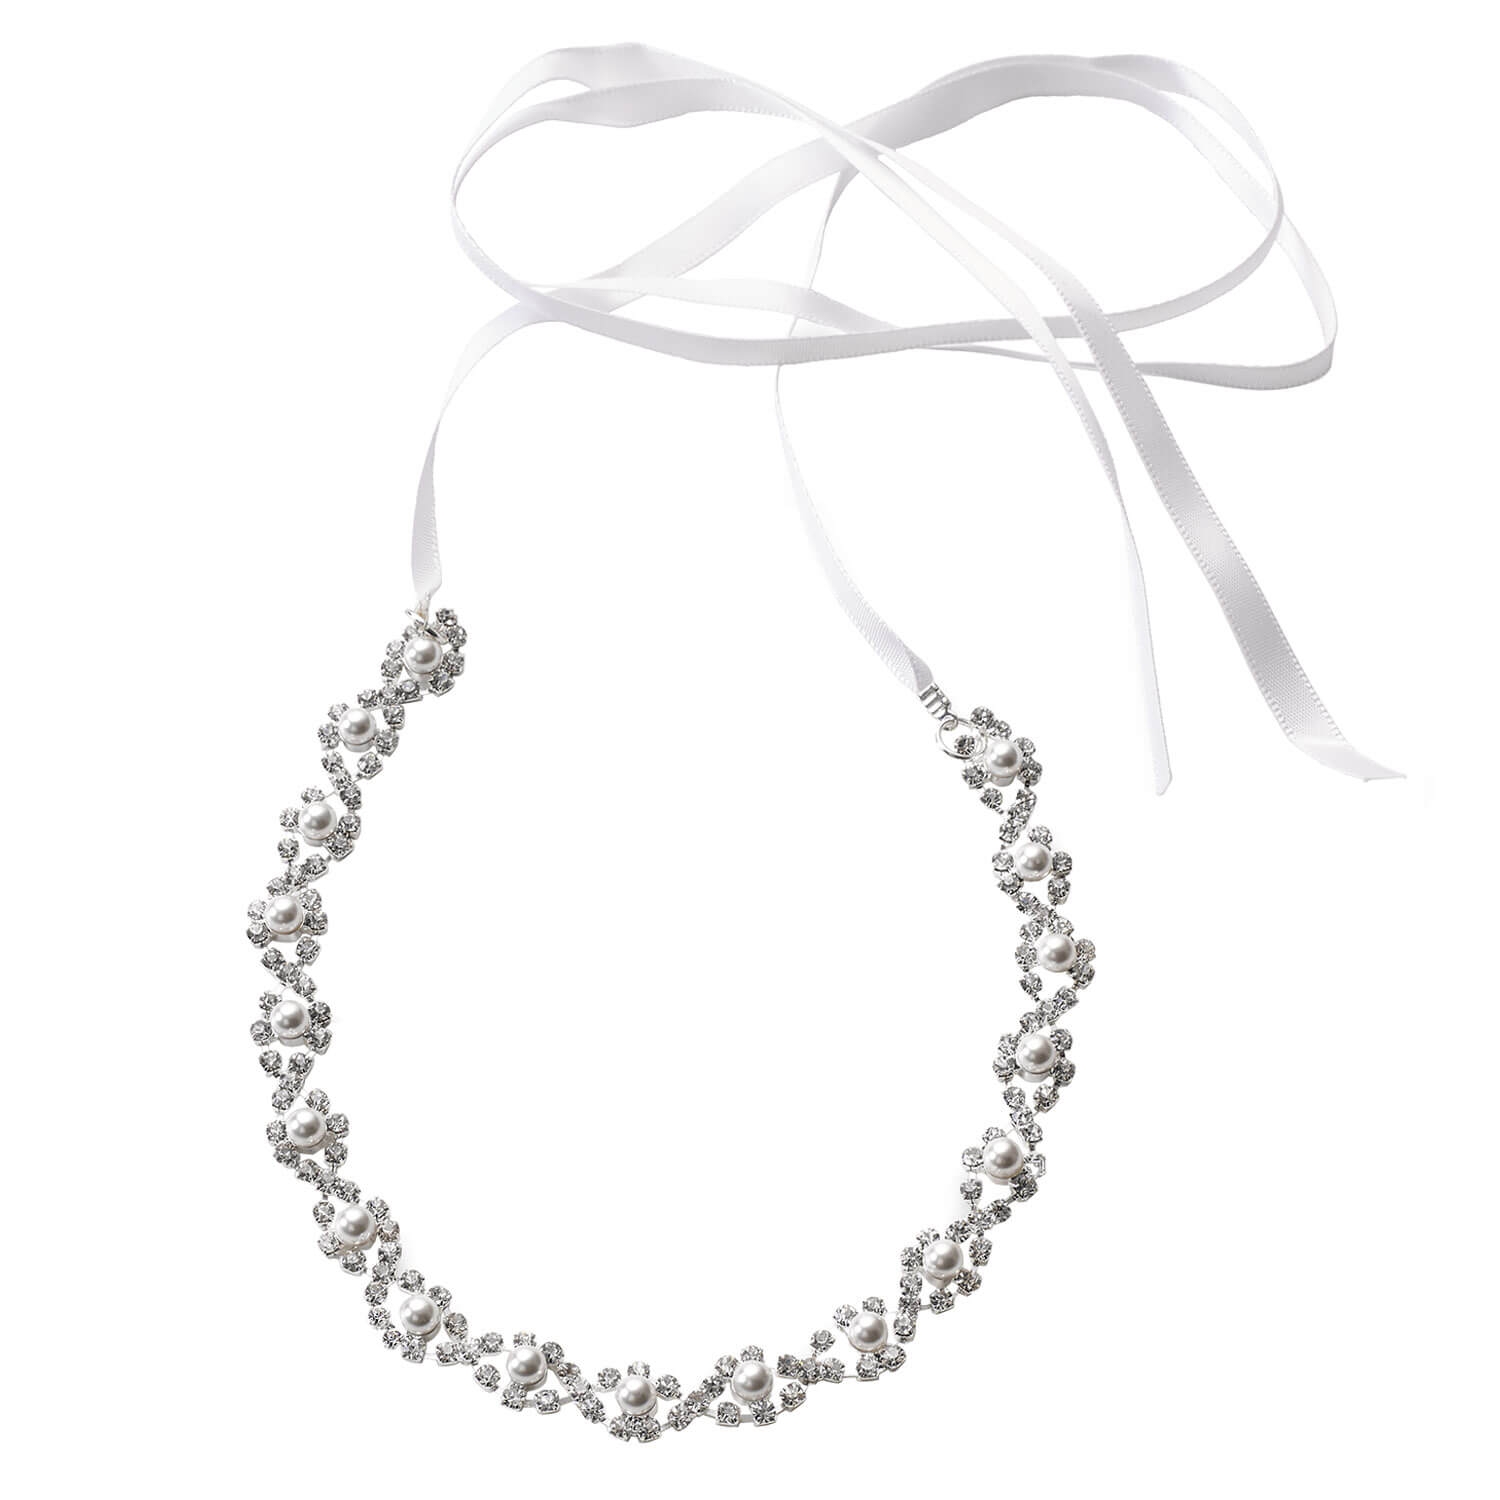 Produktbild von Celebride - Haarband Mit Strass Und Perlen